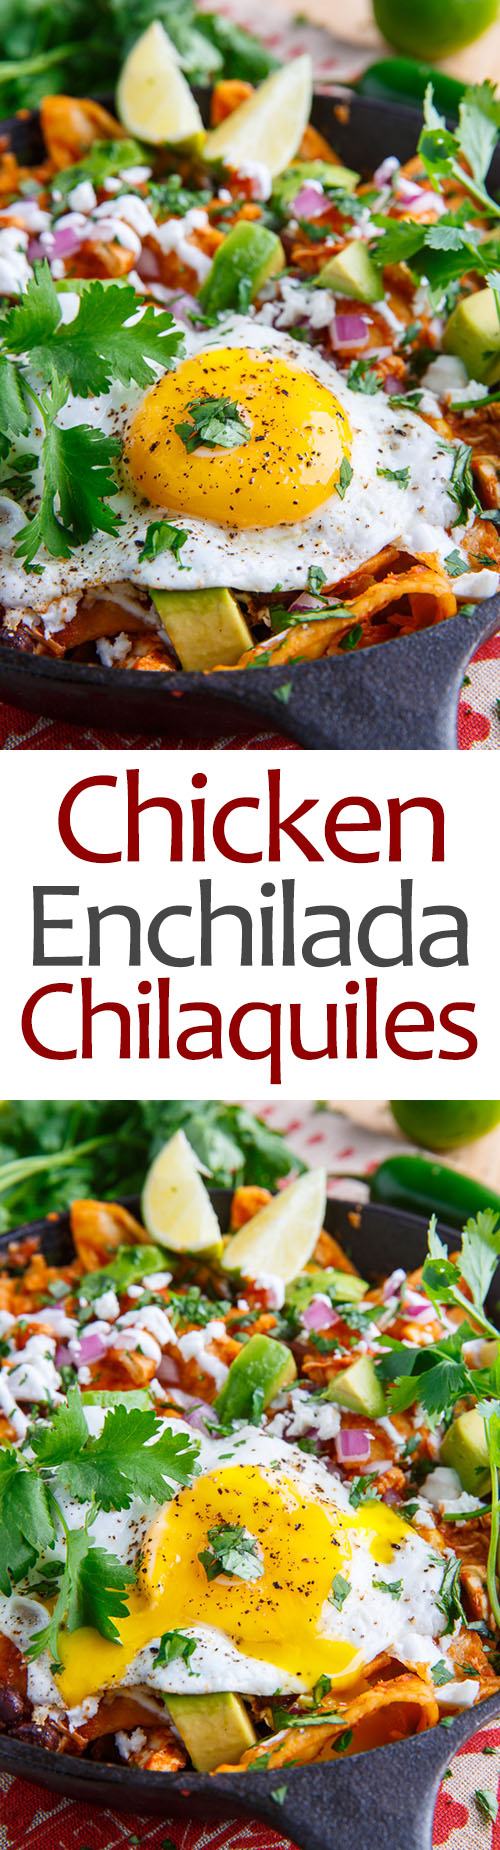 Chicken Enchilada Chilaquiles